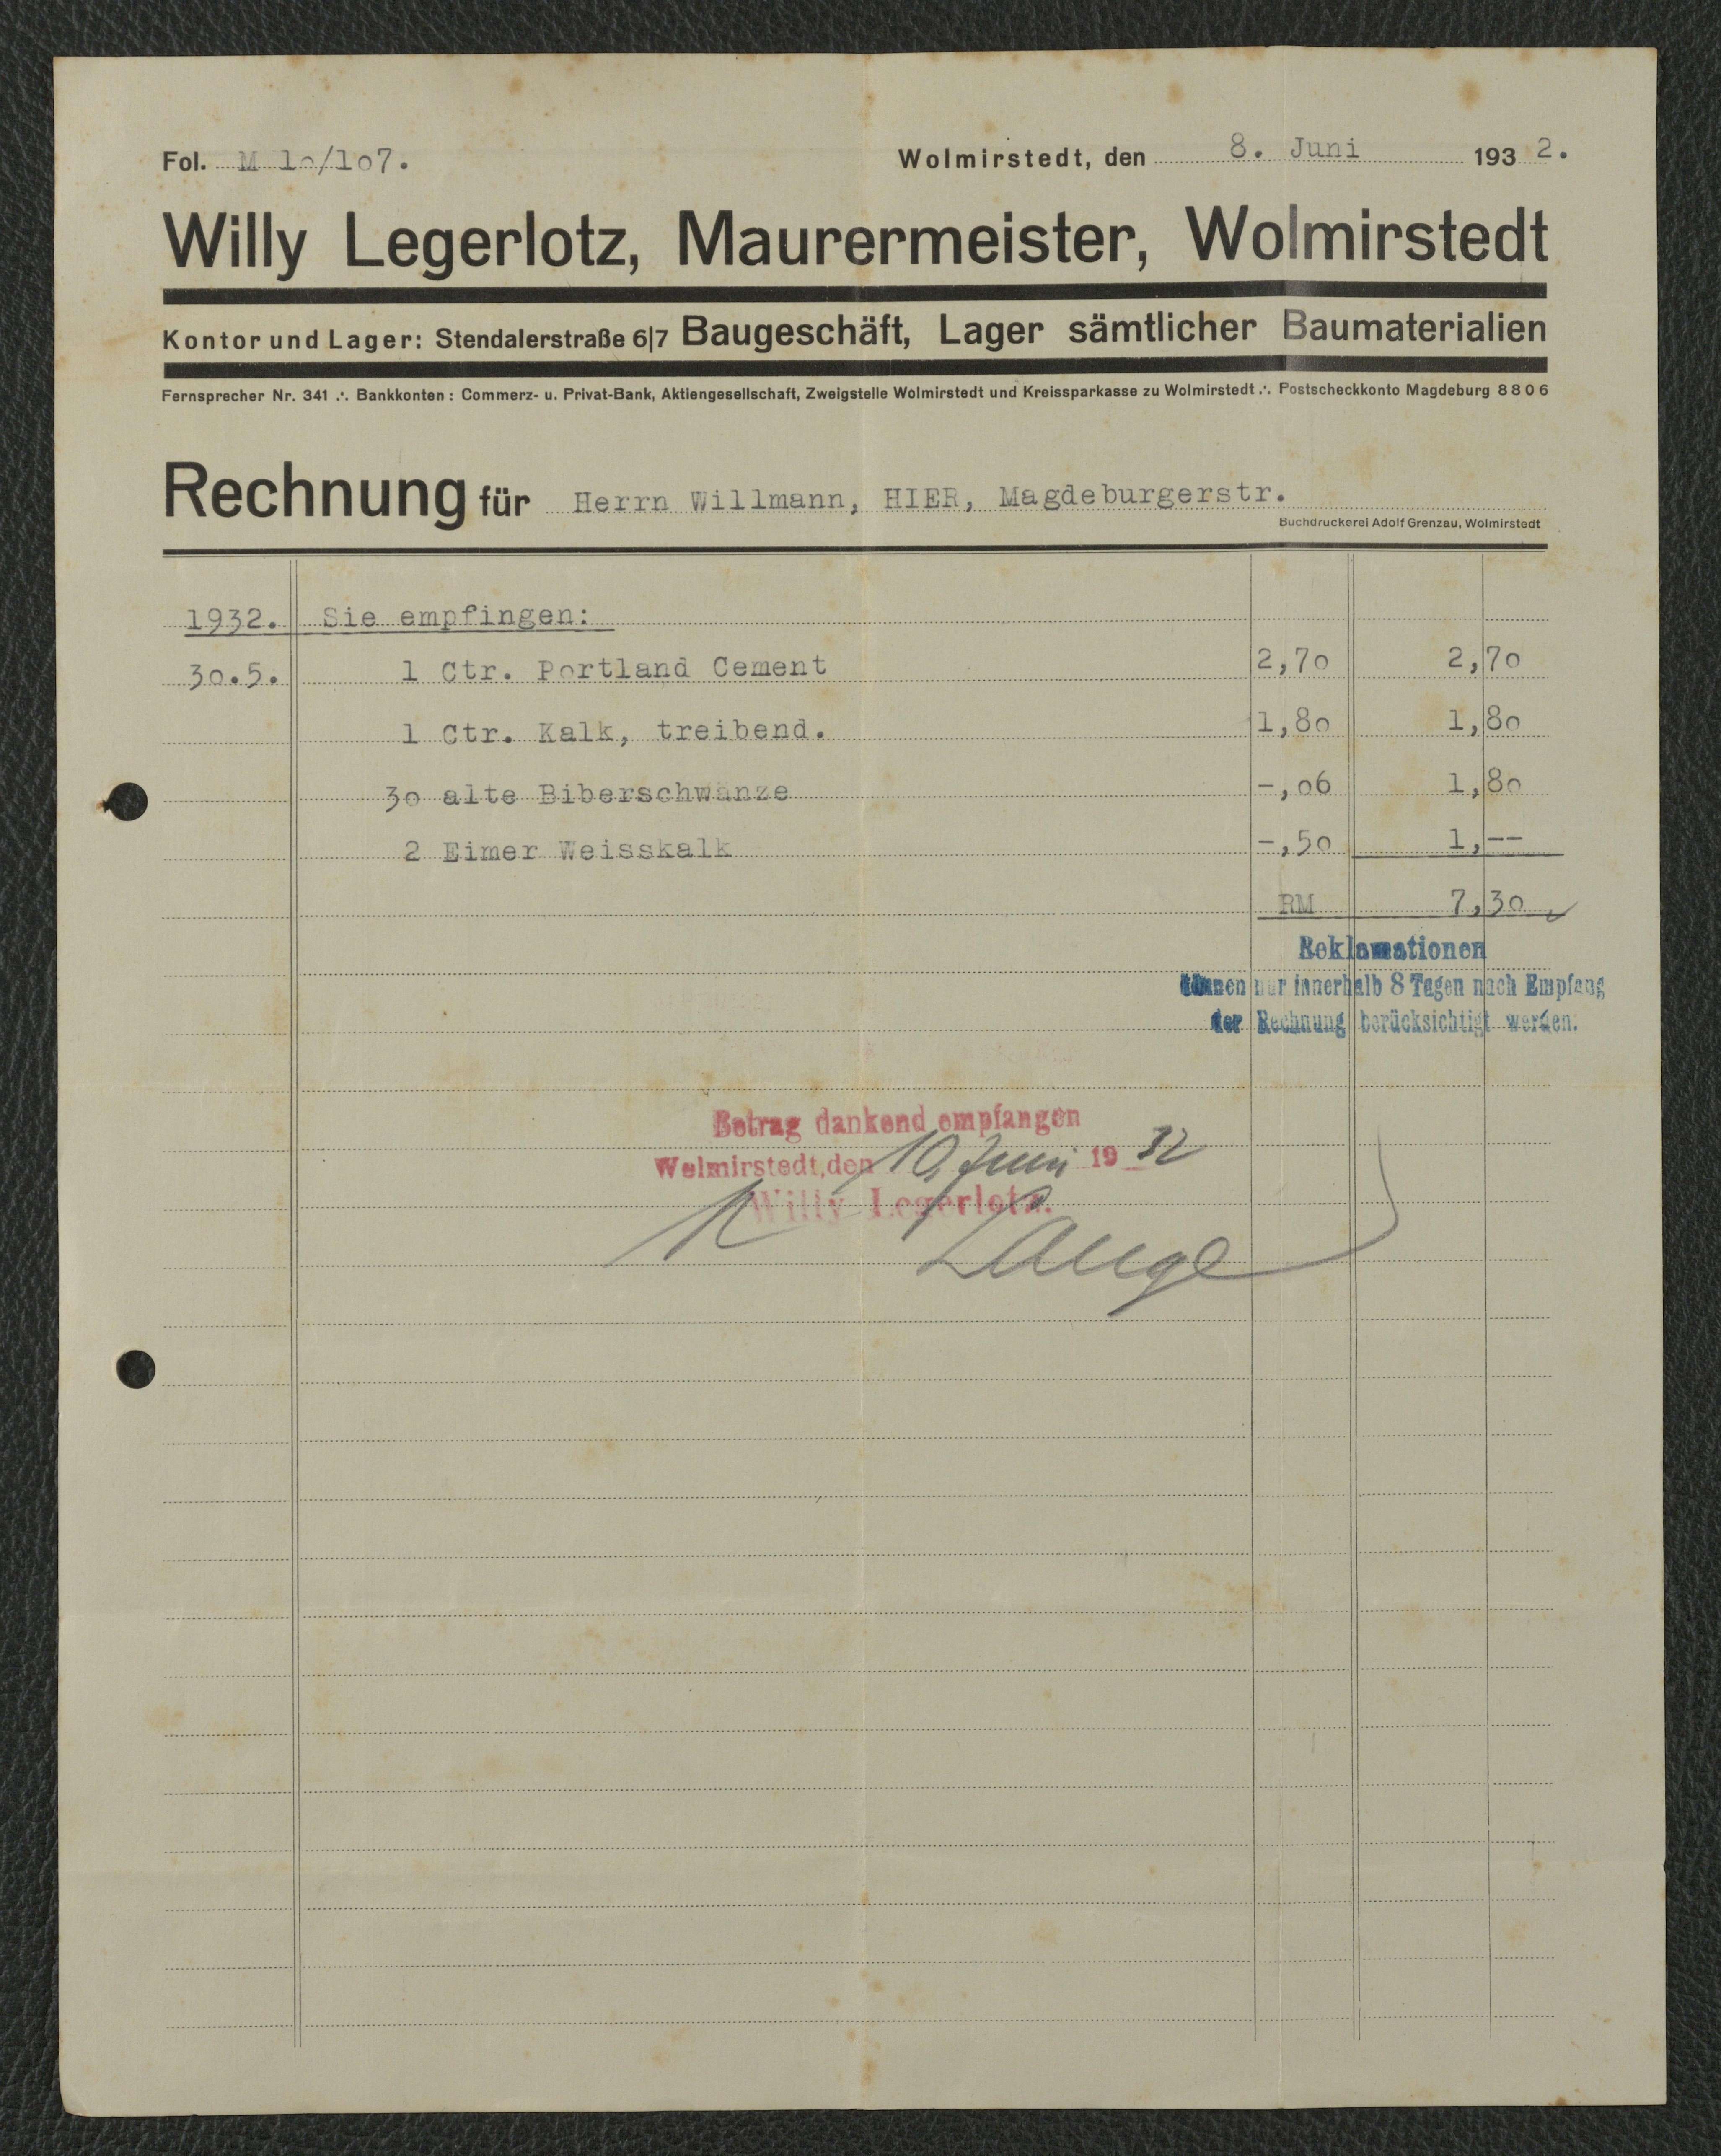 Rechnung Maurermeister Willy Legerlotz für Willmann, Wolmirstedt vom 08.06.1932 (Museum Wolmirstedt RR-F)